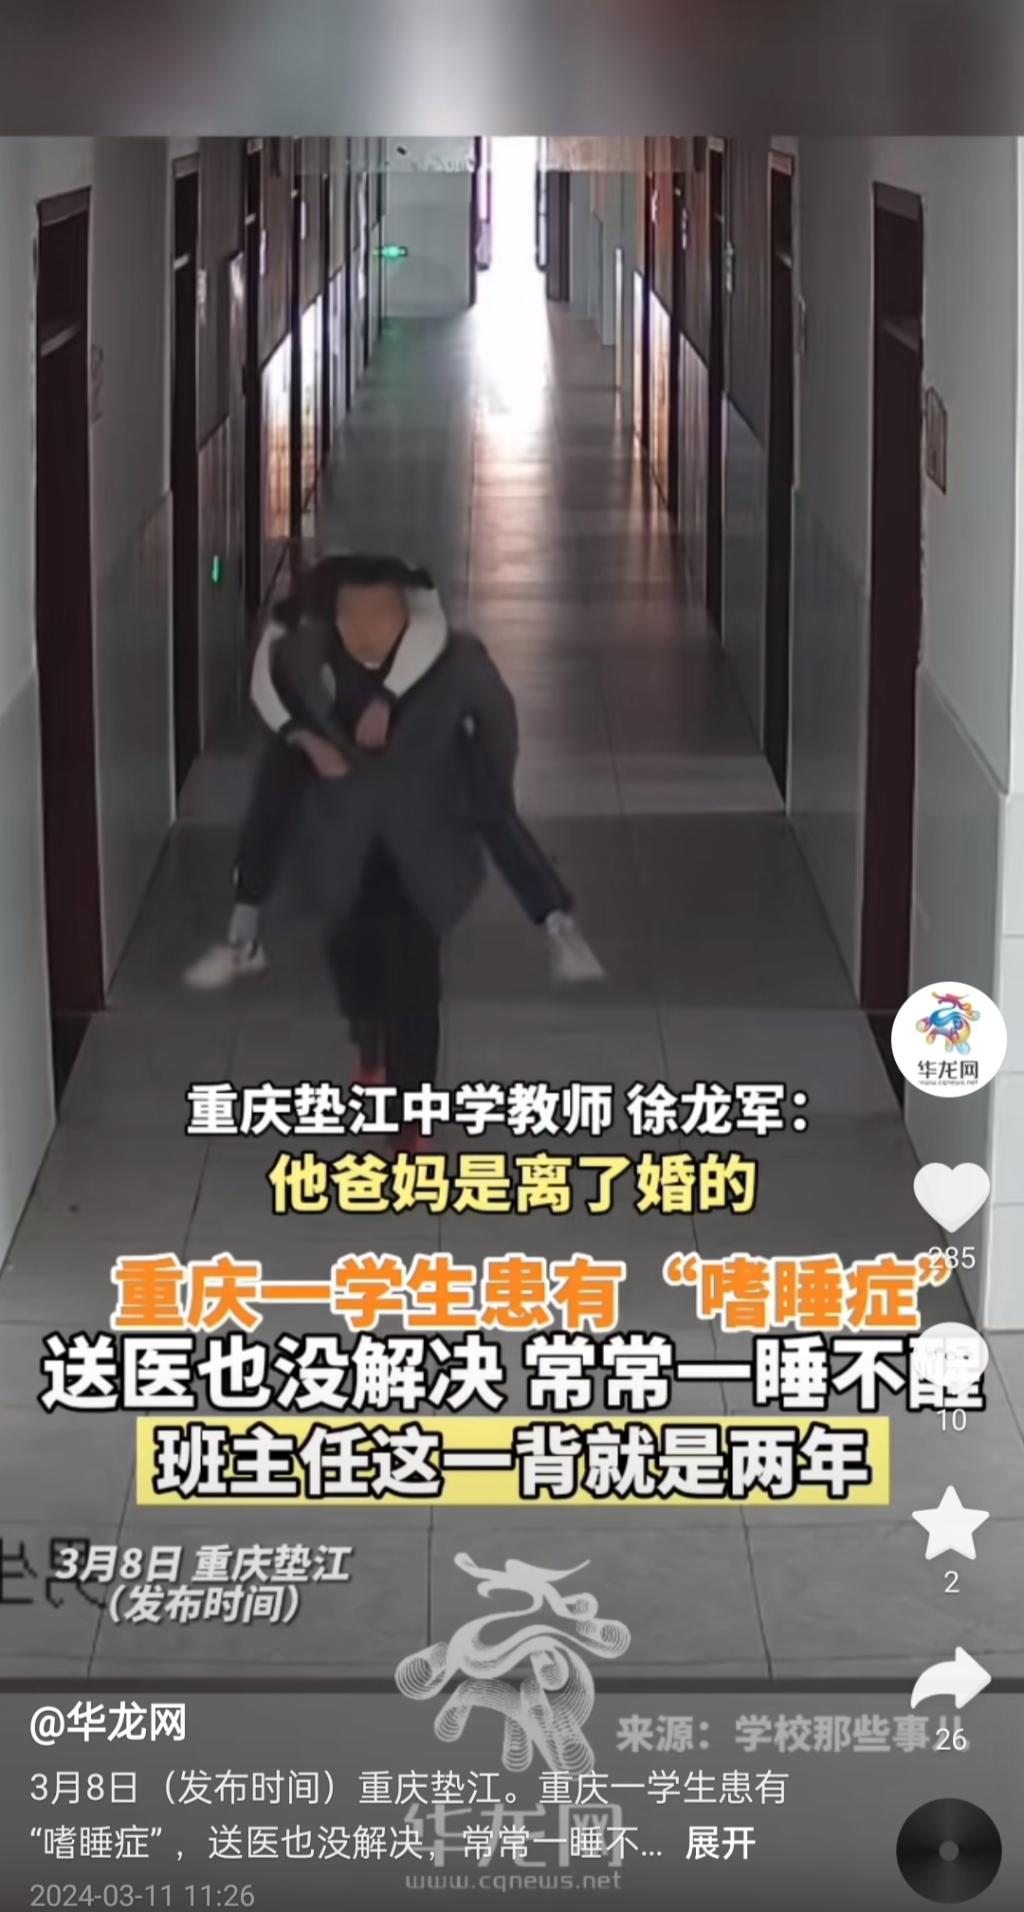 徐龙军背嗜睡学生下楼的画面感动了不少网友。网络截图